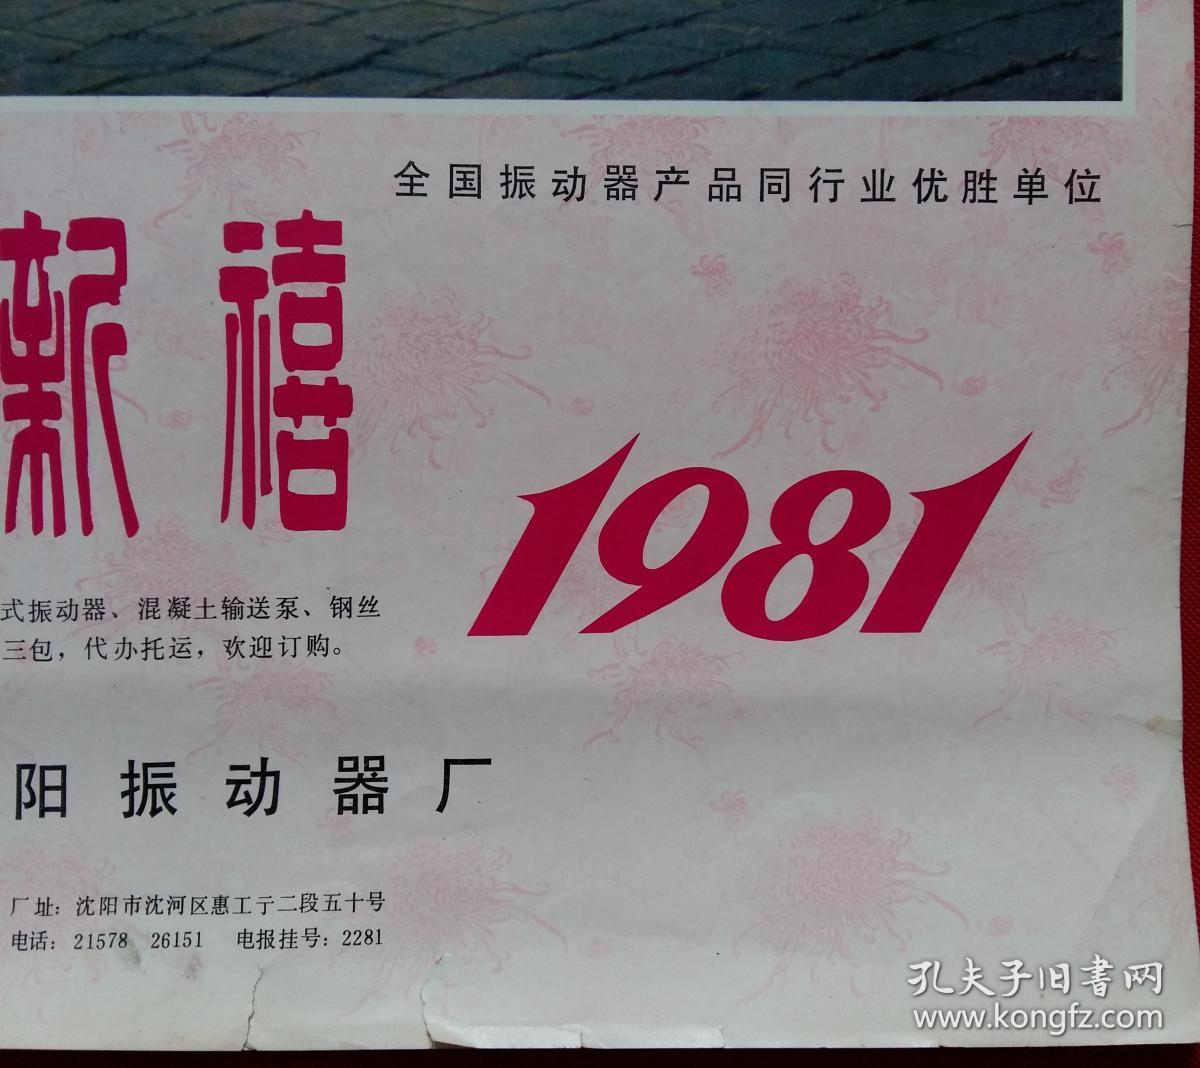 旧藏挂历1981年恭贺新禧 剧照摄影7全 百花仙子、鹊桥相会等